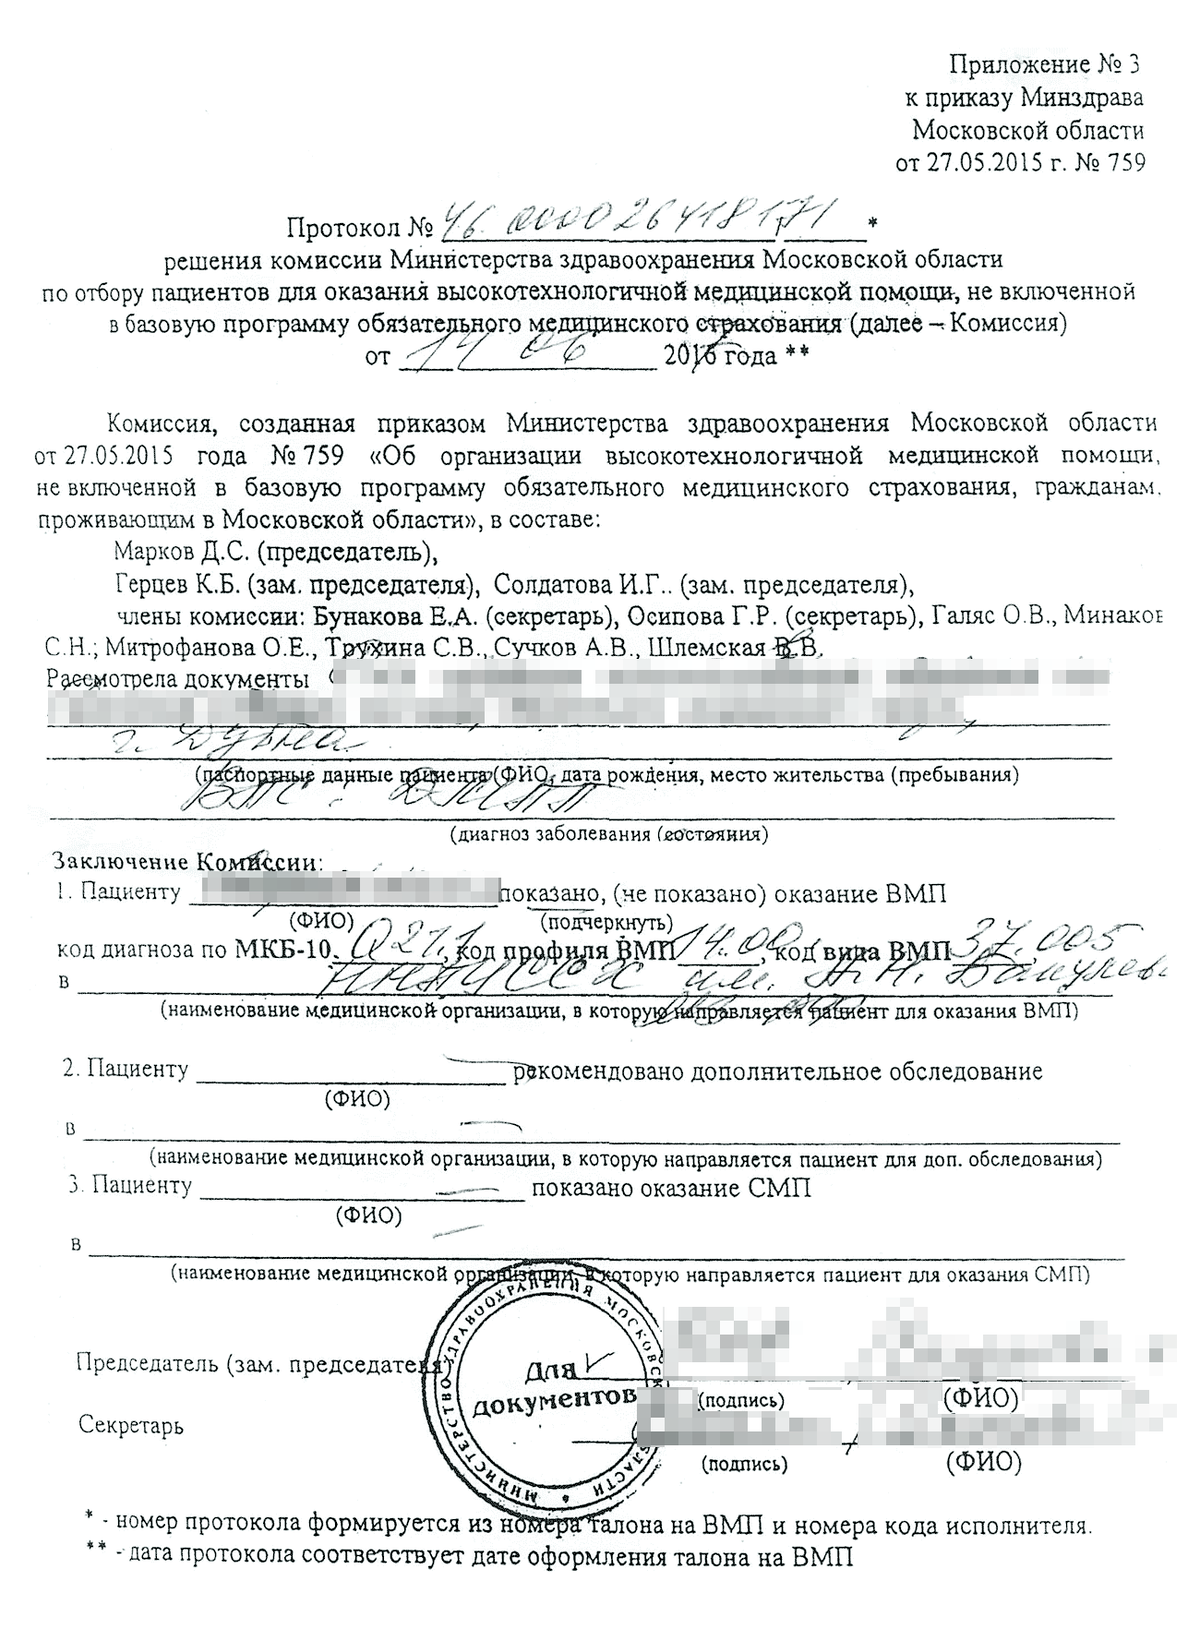 Самого документа у меня не осталось, но он выглядел примерно так. Источник: okolitsa-info.ru